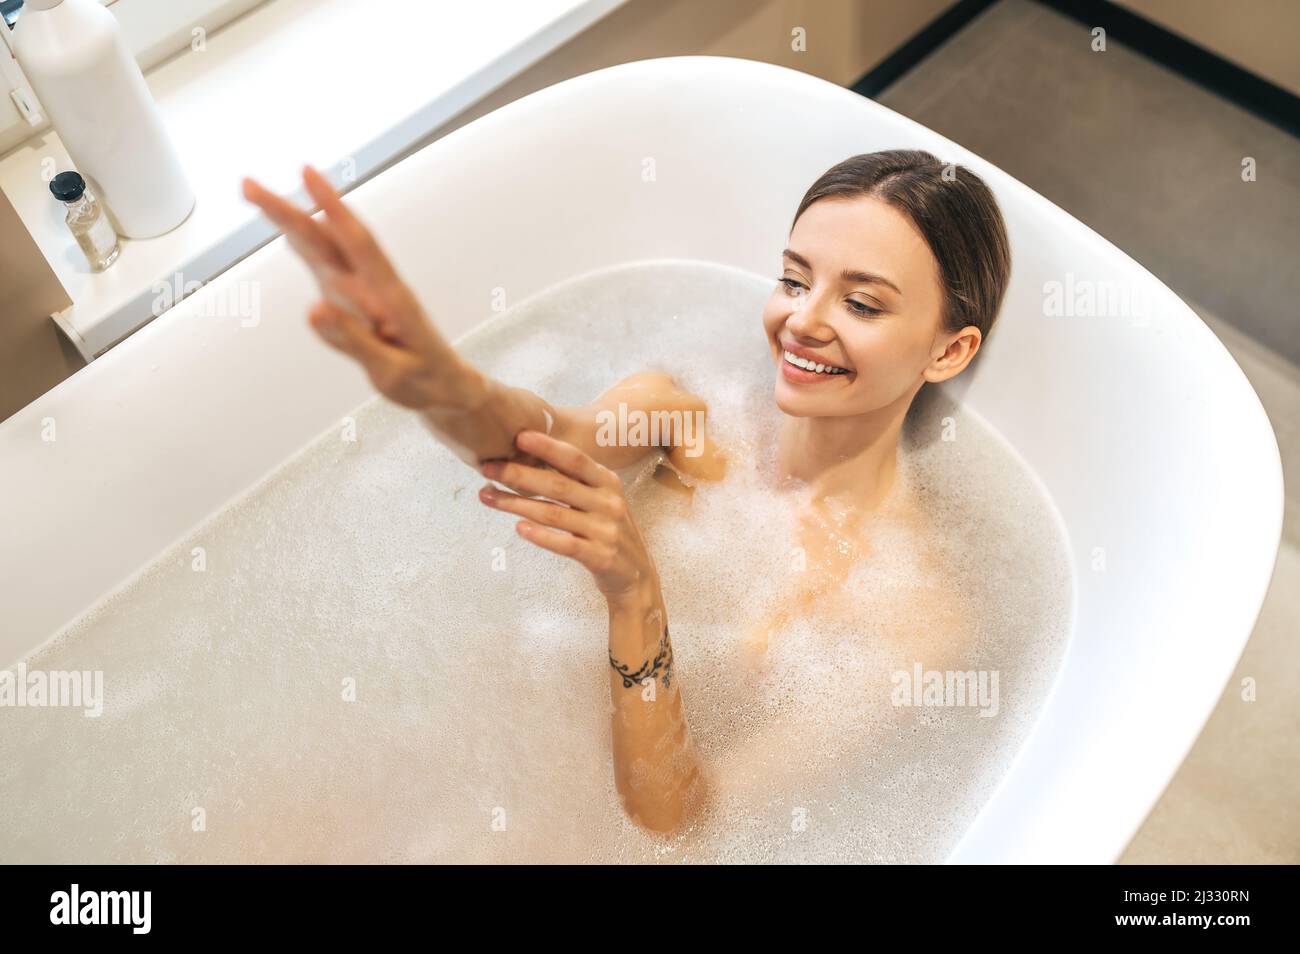 Une femme joyeuse se lavant elle-même dans la salle de bain Banque D'Images